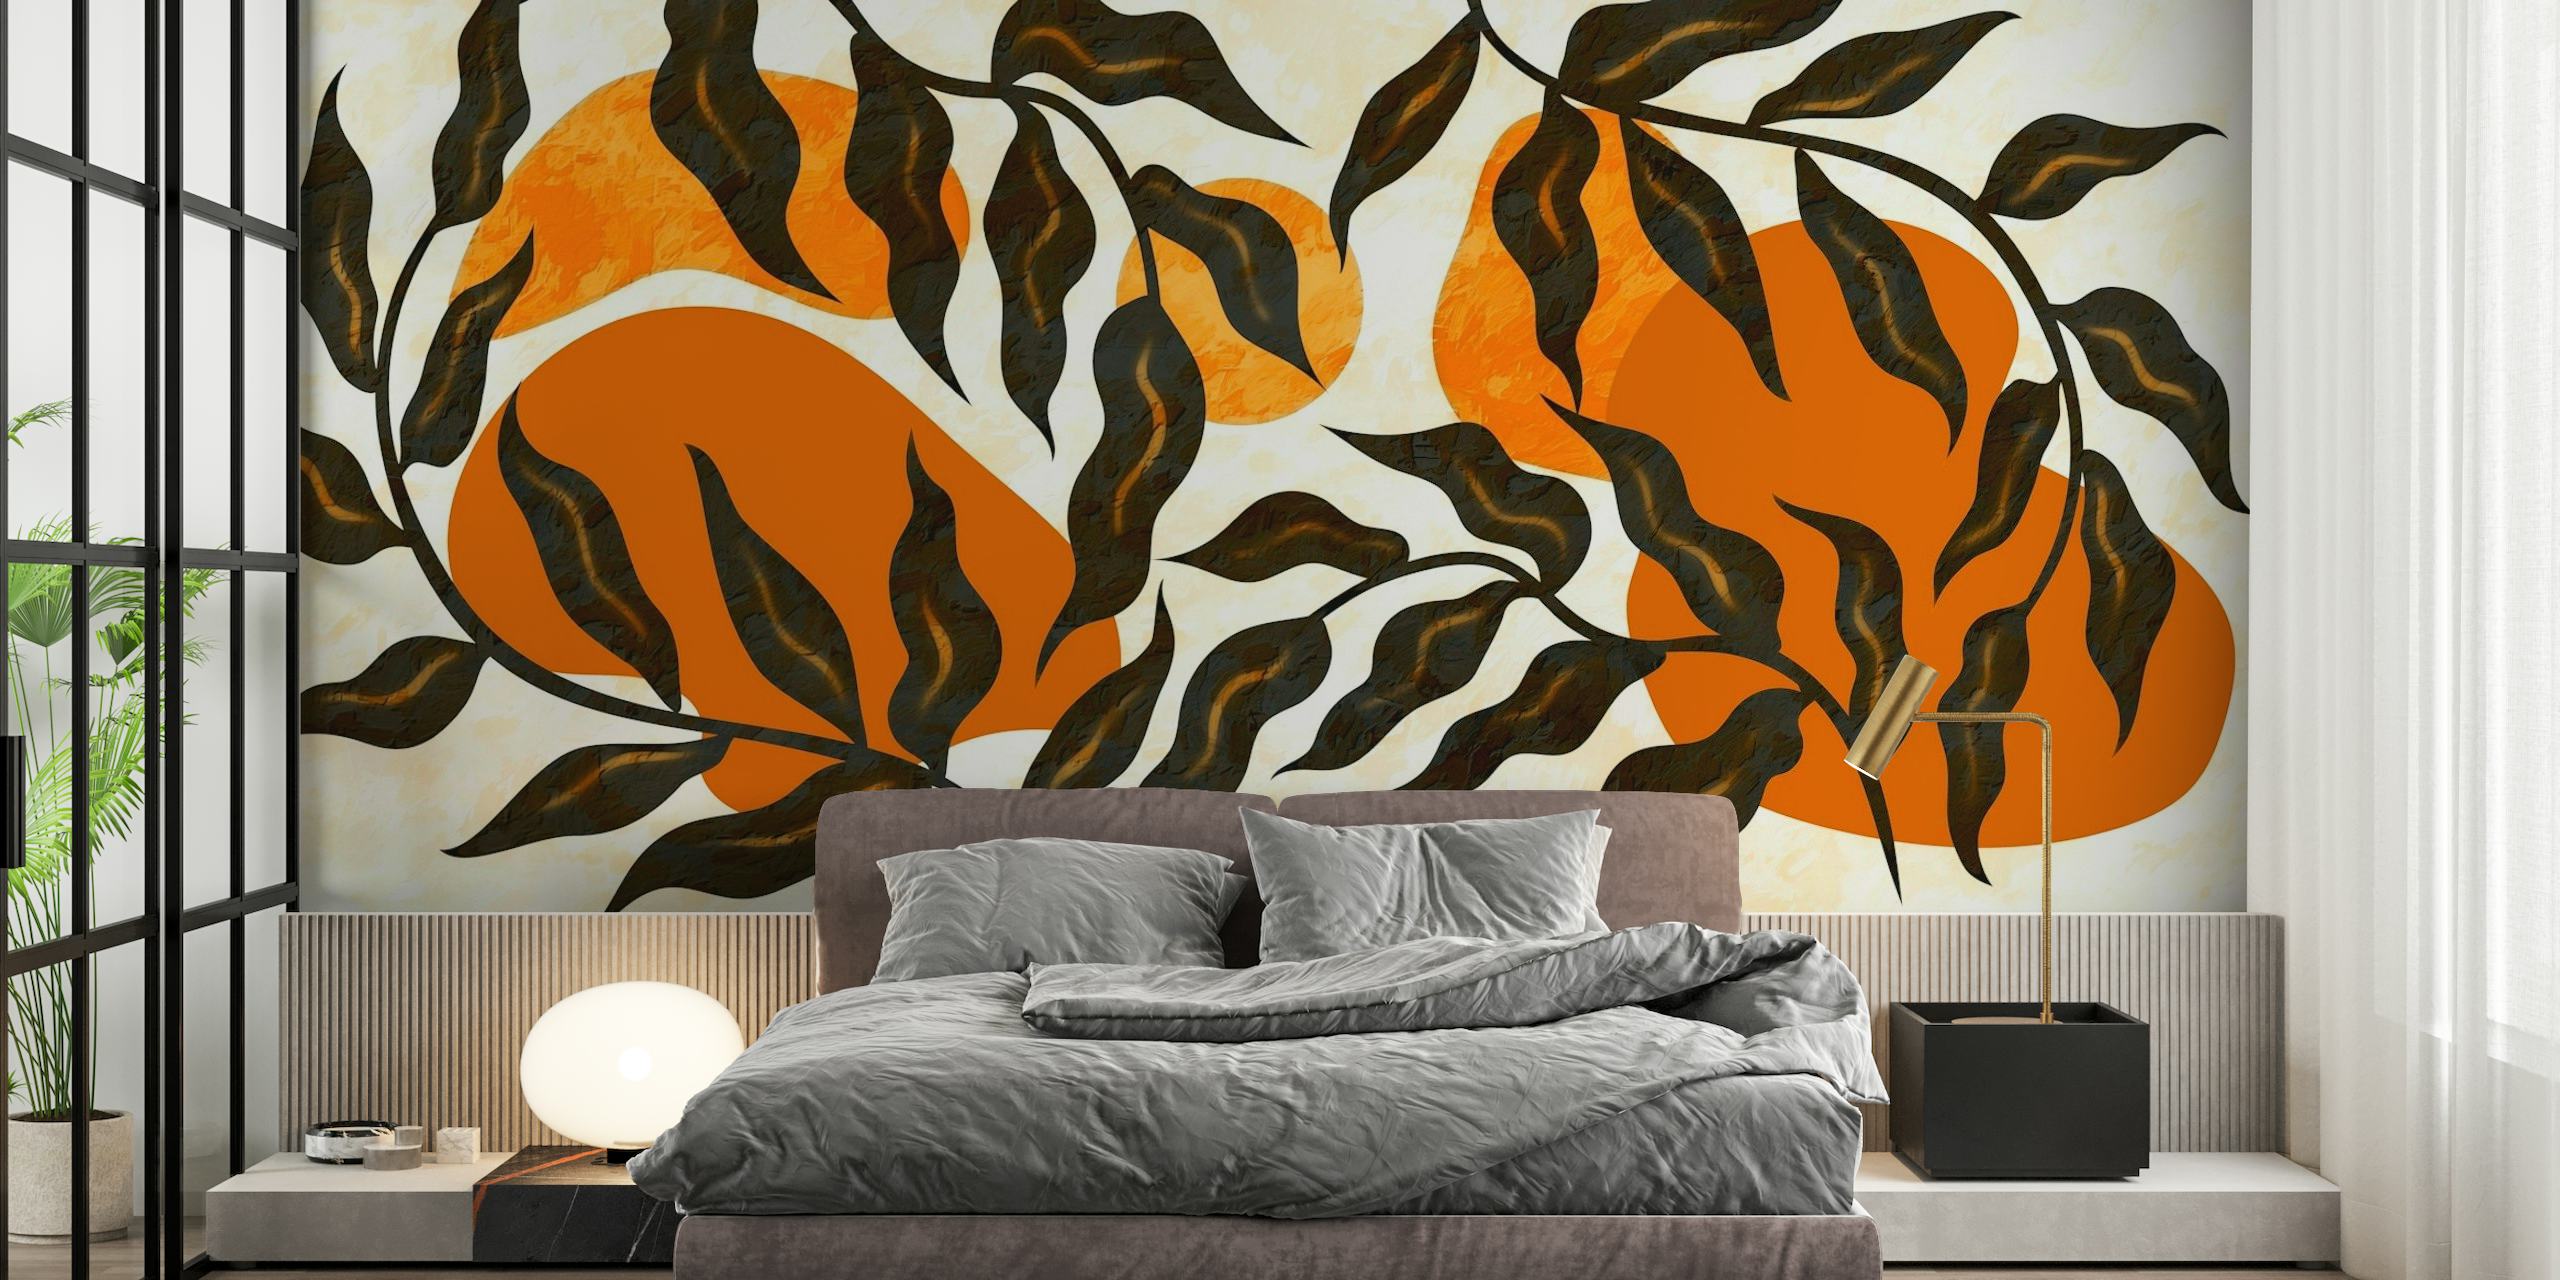 Wandbild Sunrise Luxury Leaves mit warmen botanischen Mustern in Aprikose und Schwarz